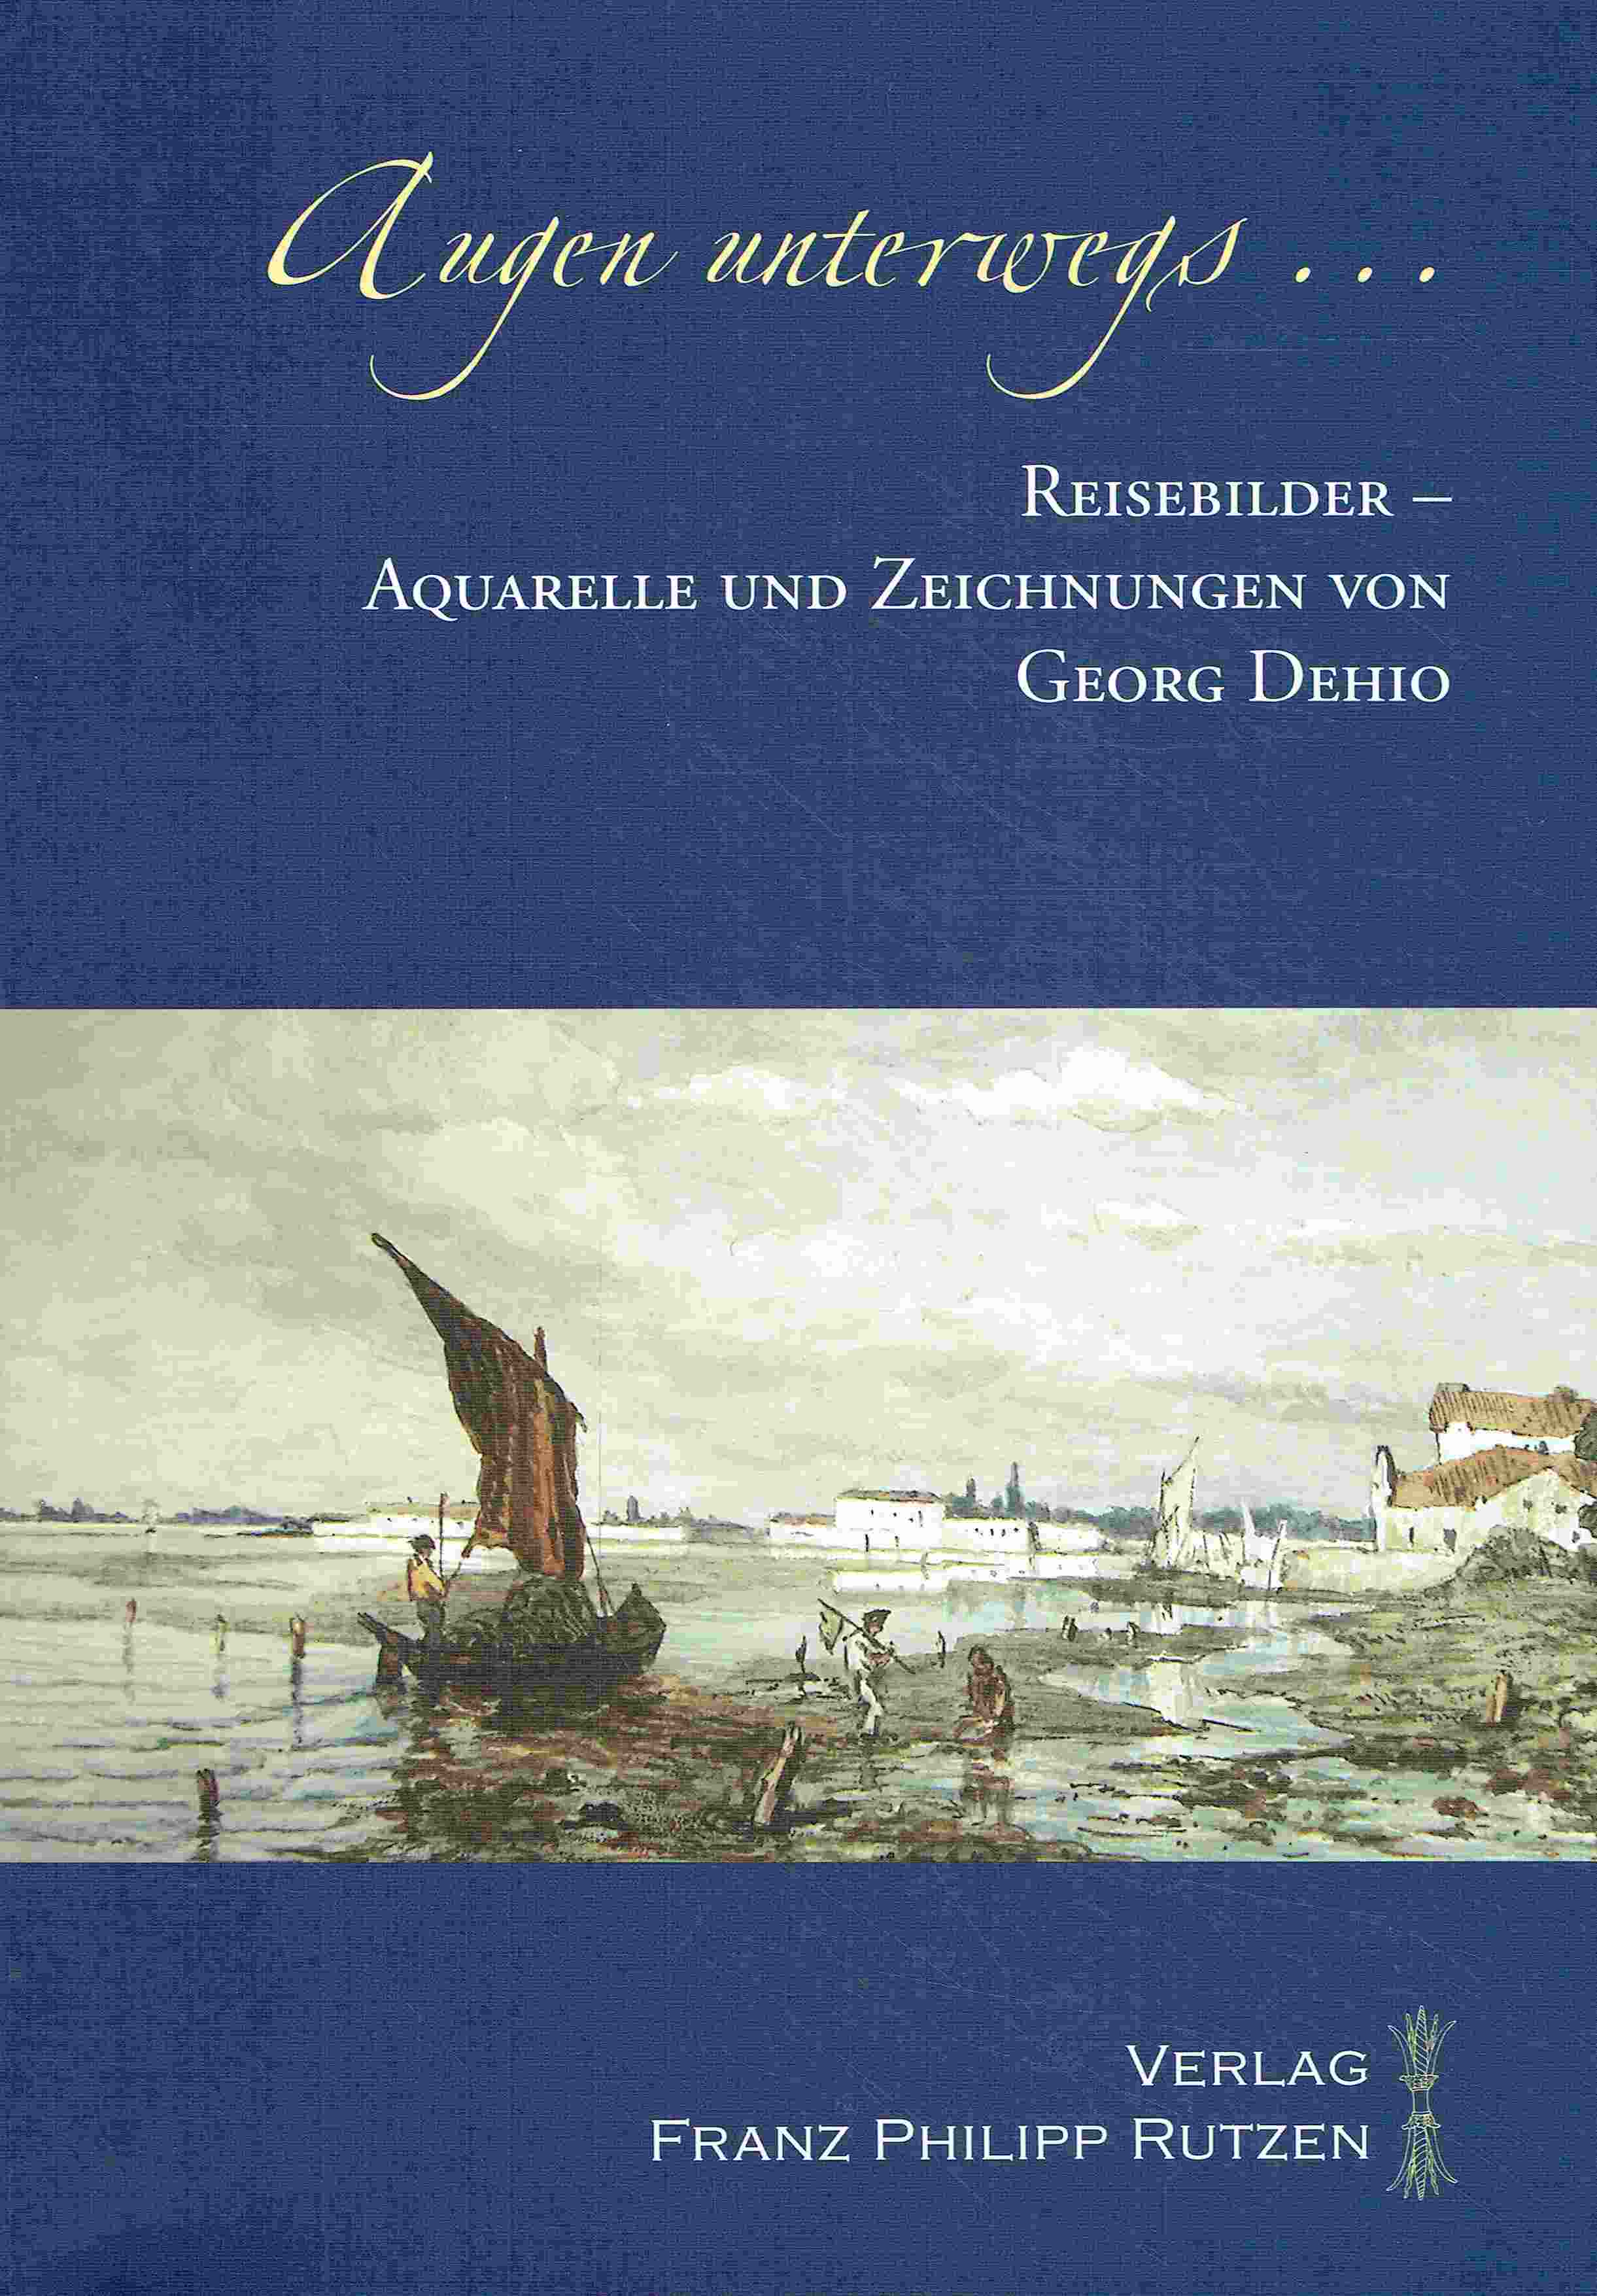 Augen unterwegs. Reisebilder - Aquarelle und Zeichnungen von Georg Dehio. - Betthausen, Peter; Feist, Peter H.; Rügler, Axel